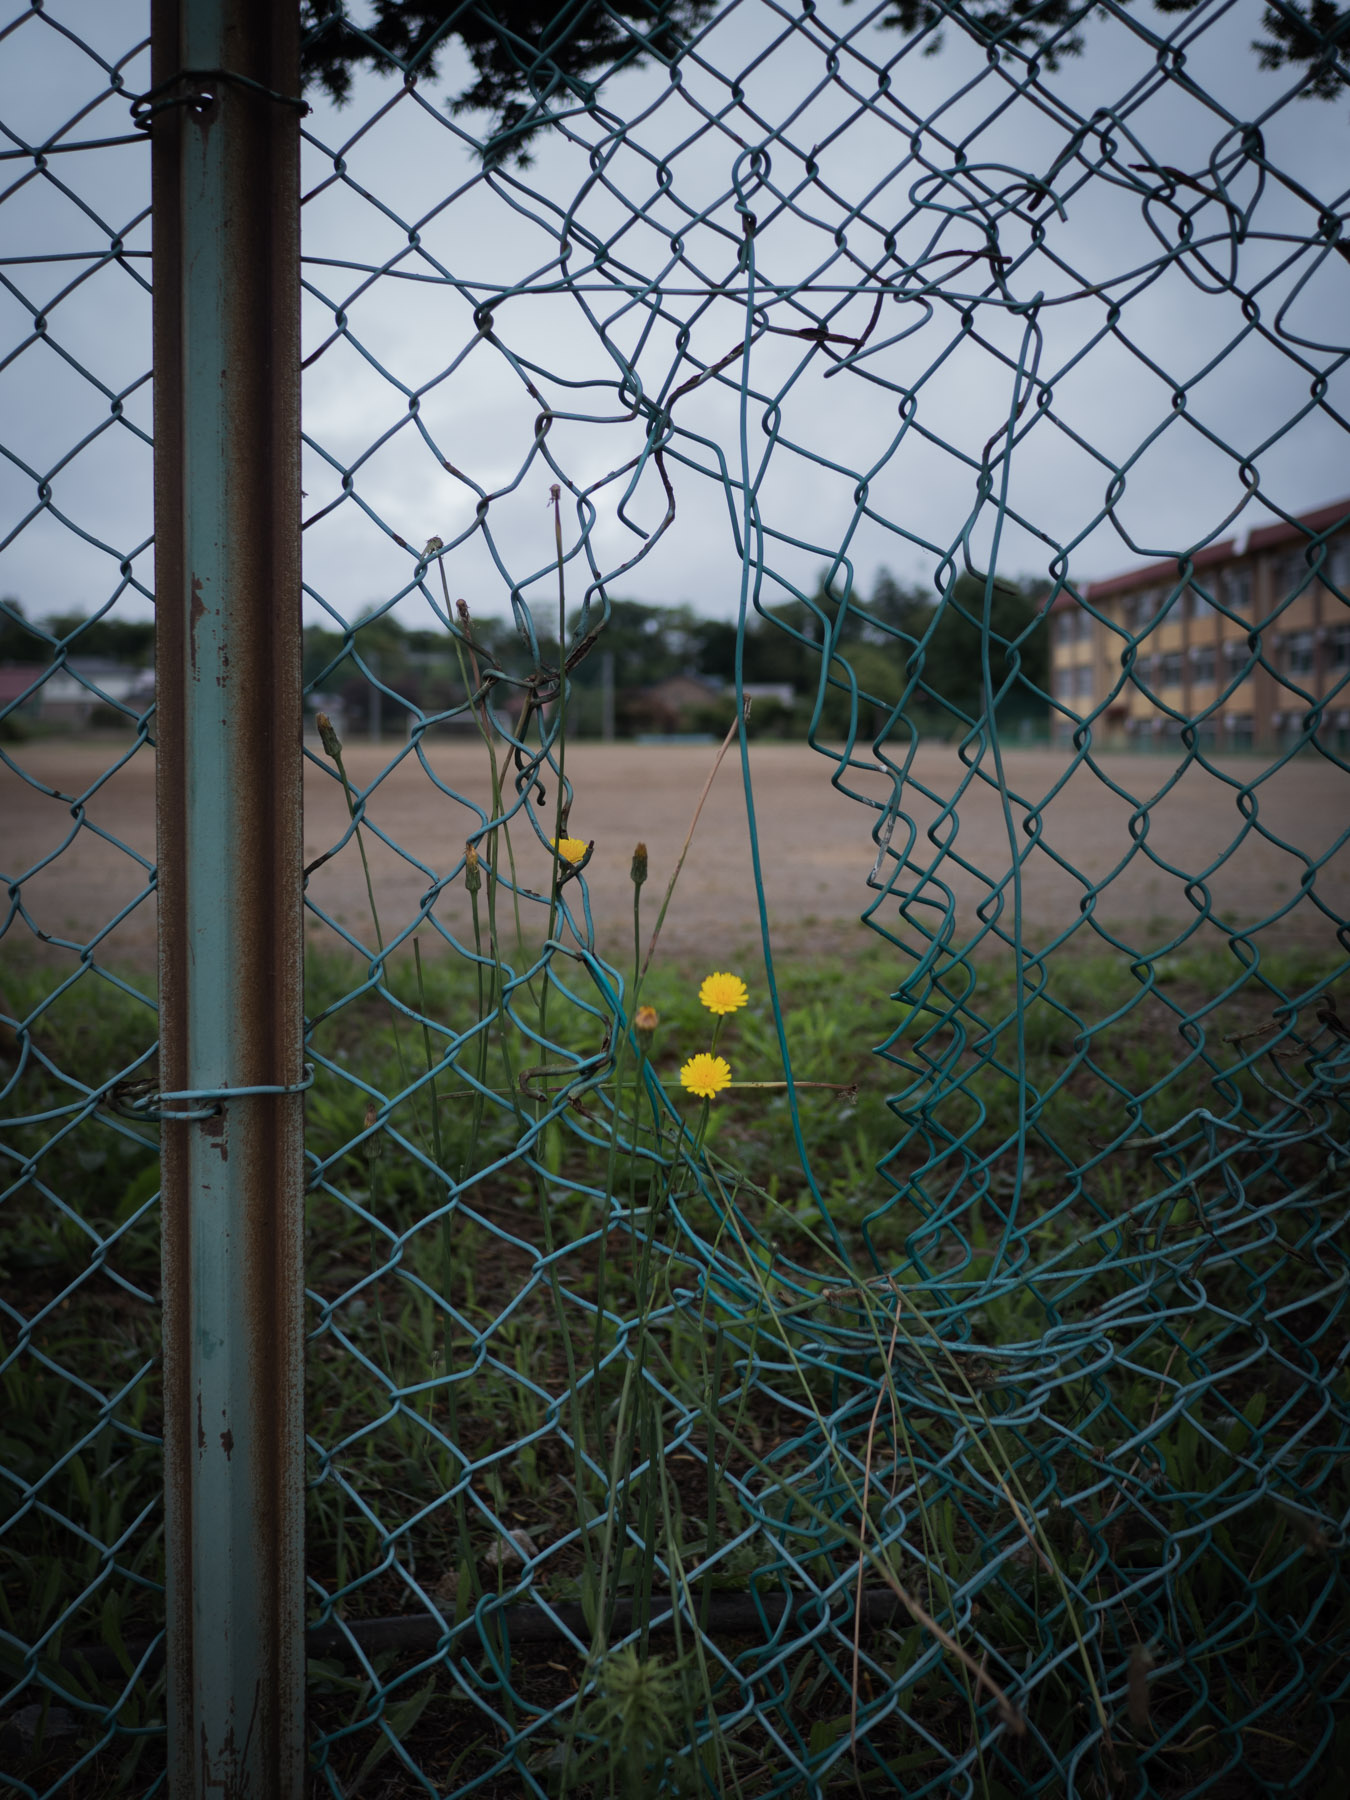 赤川中学校の金網フェンスと小さな黄色い花